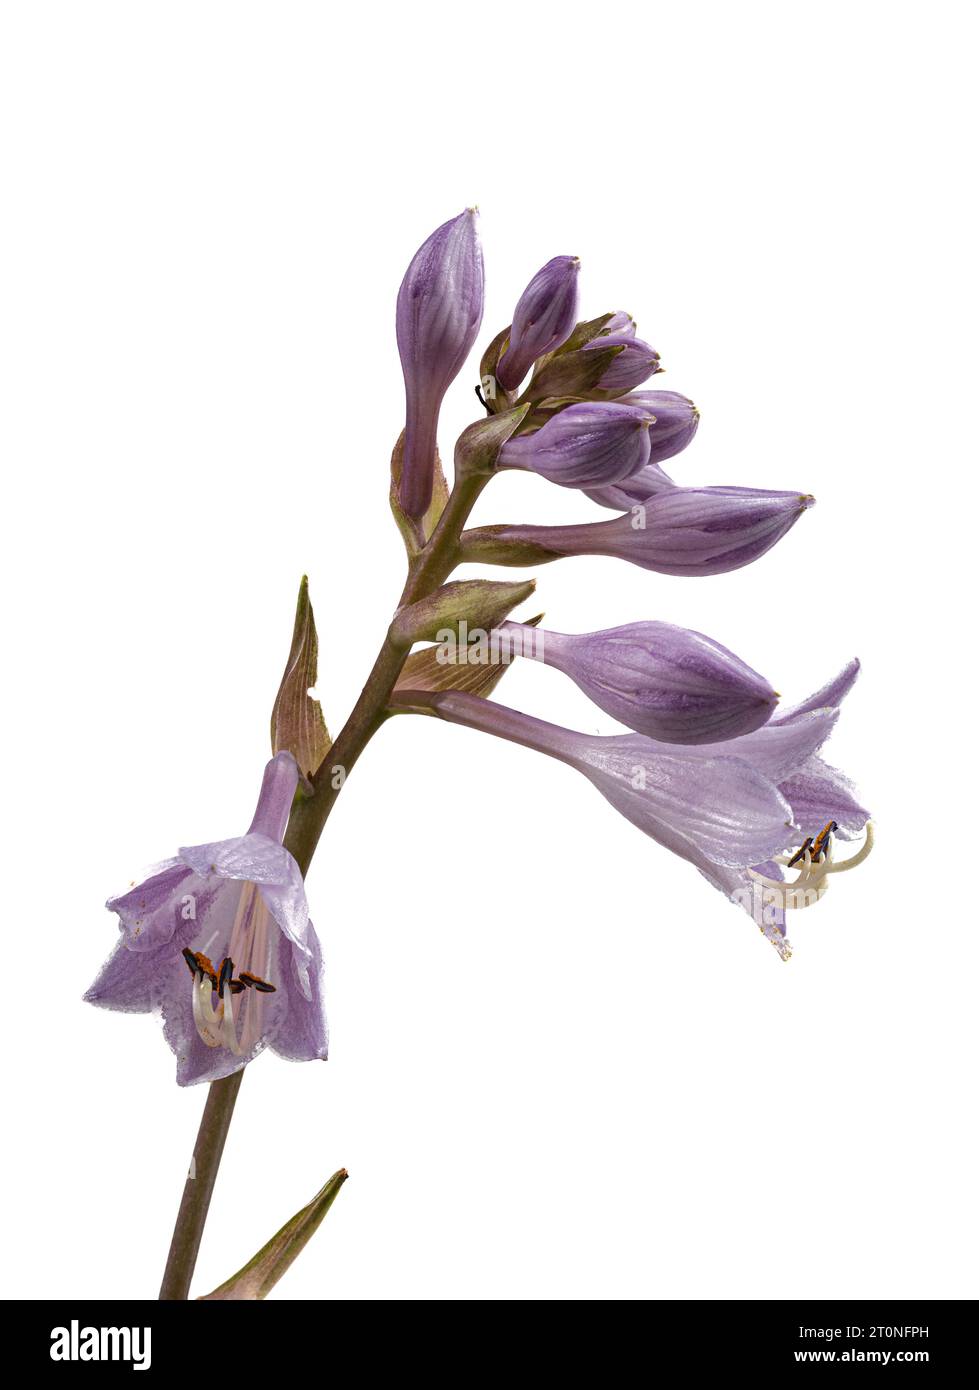 Flores de lirio lila de la planta de jardín perenne resistente, Hosta 'June' sobre un fondo blanco Foto de stock